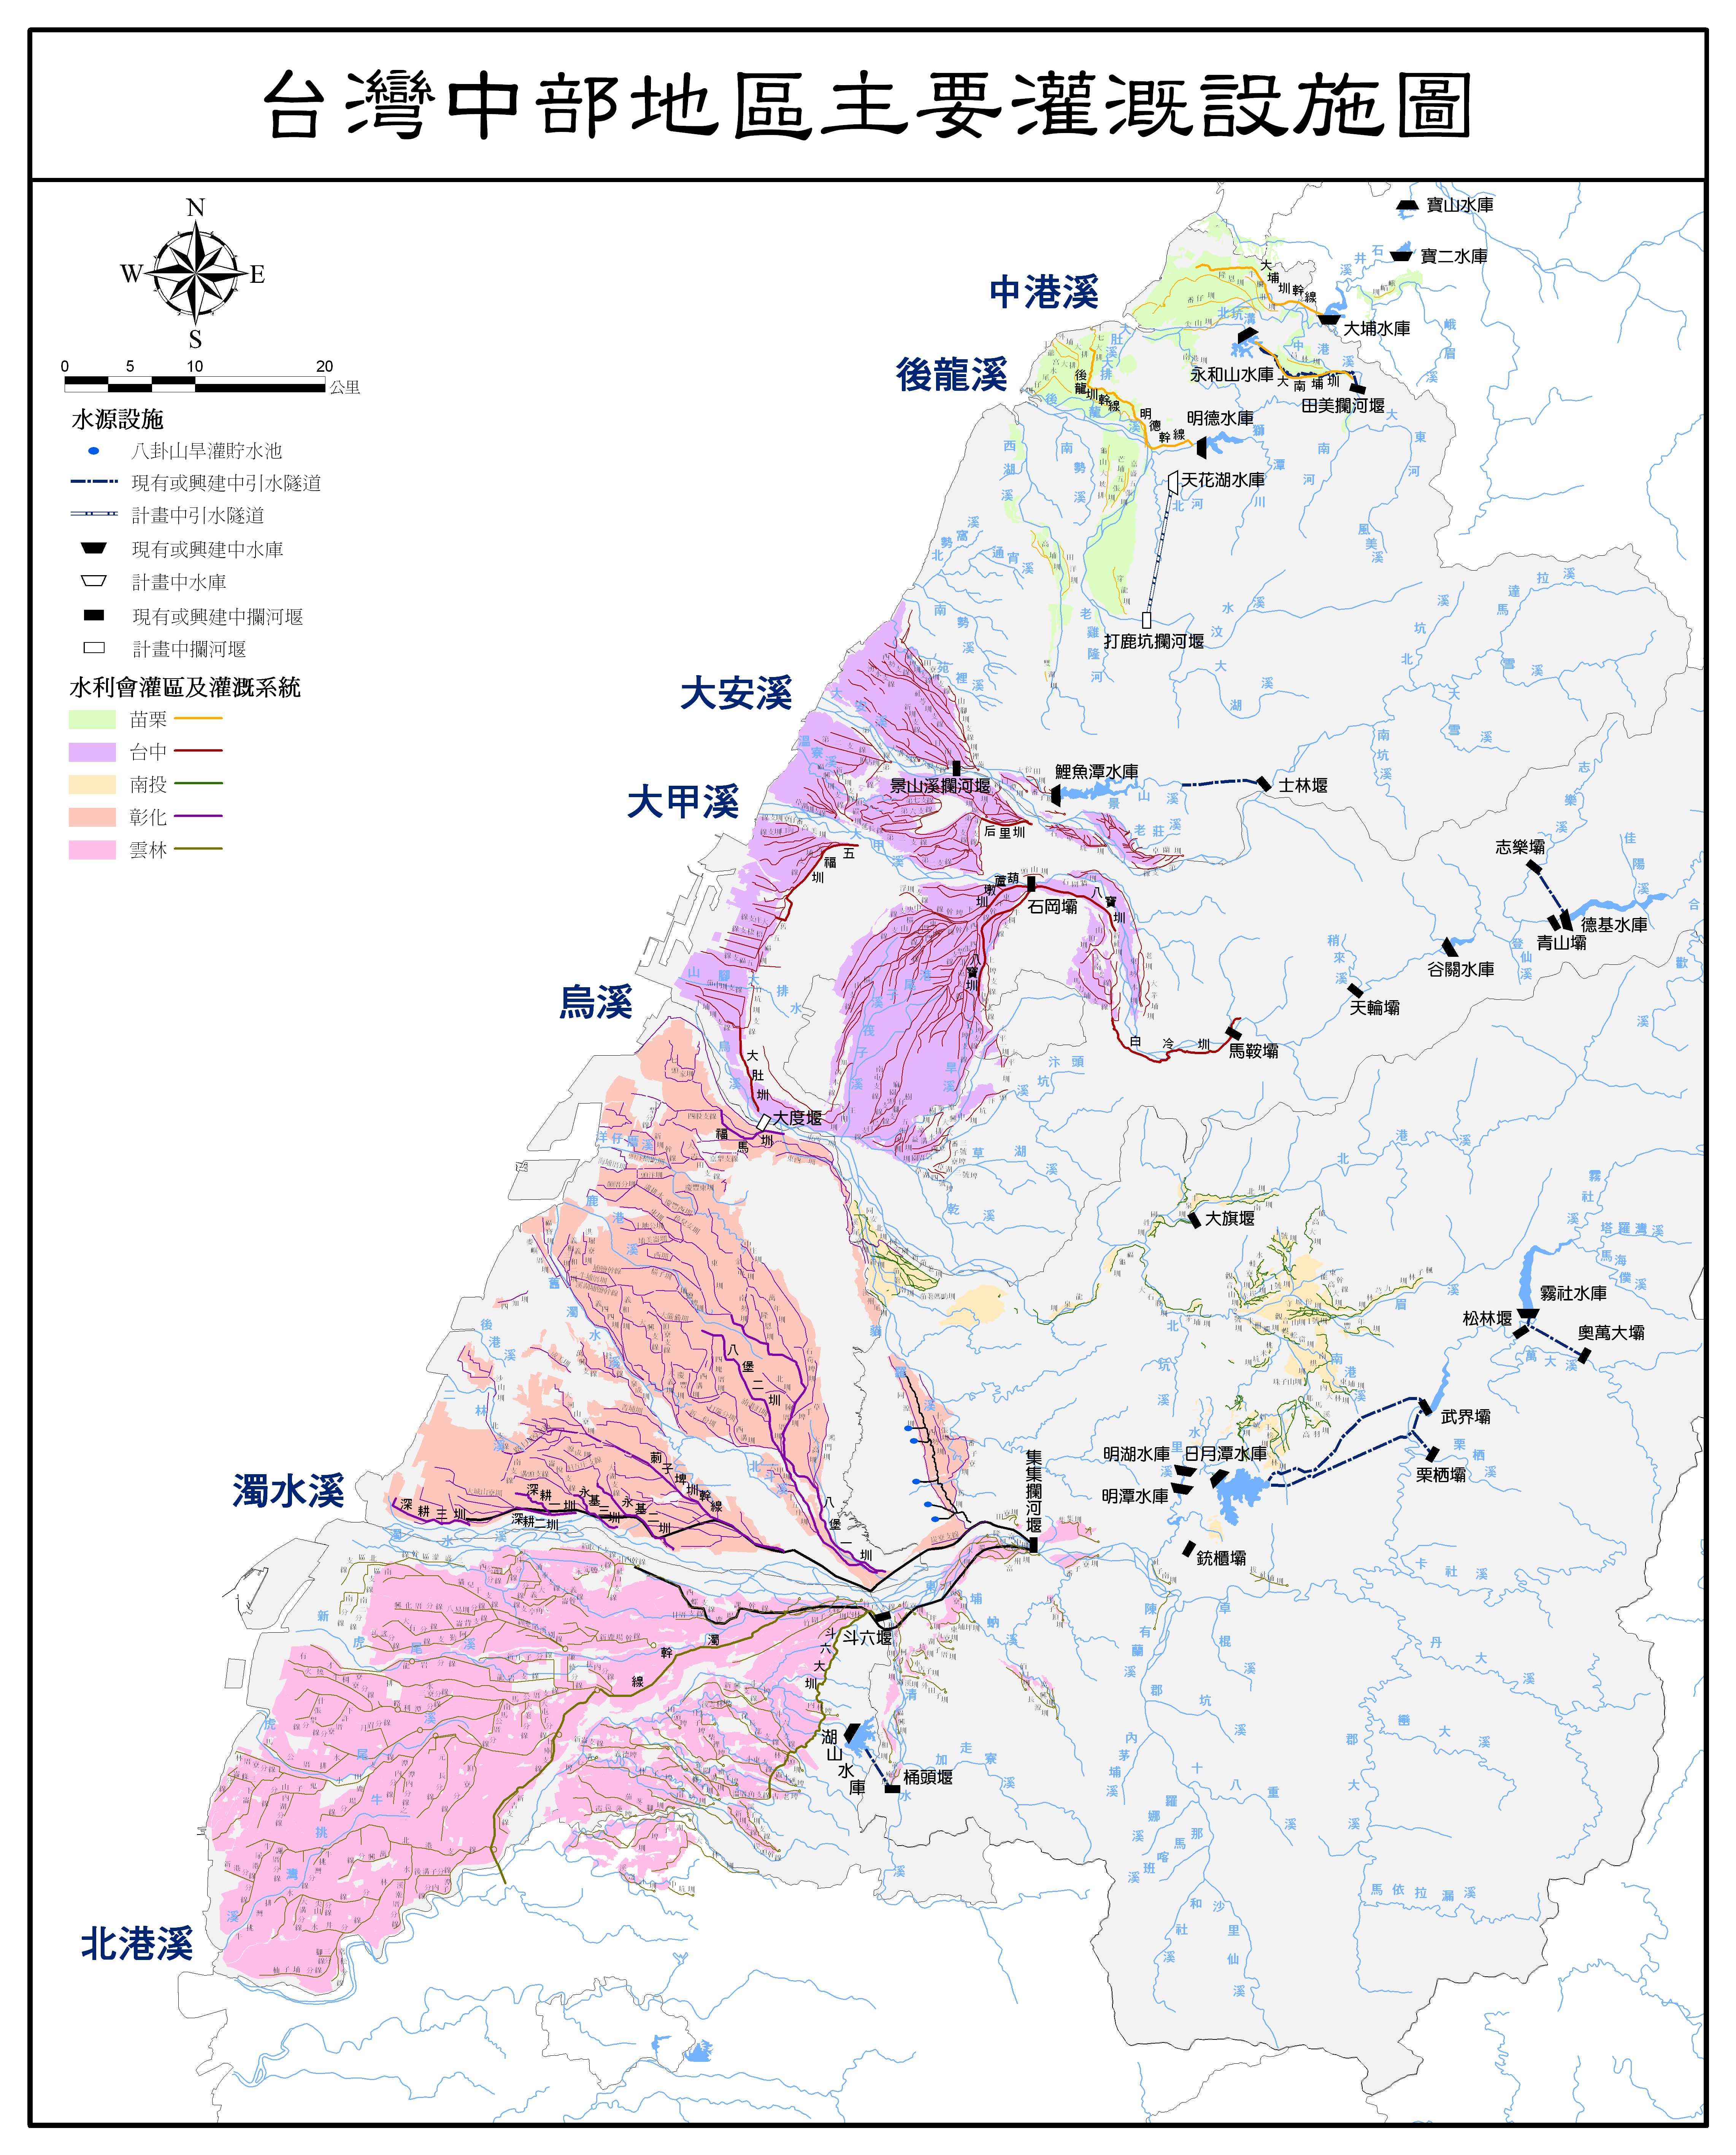 中部地區主要灌溉設施圖